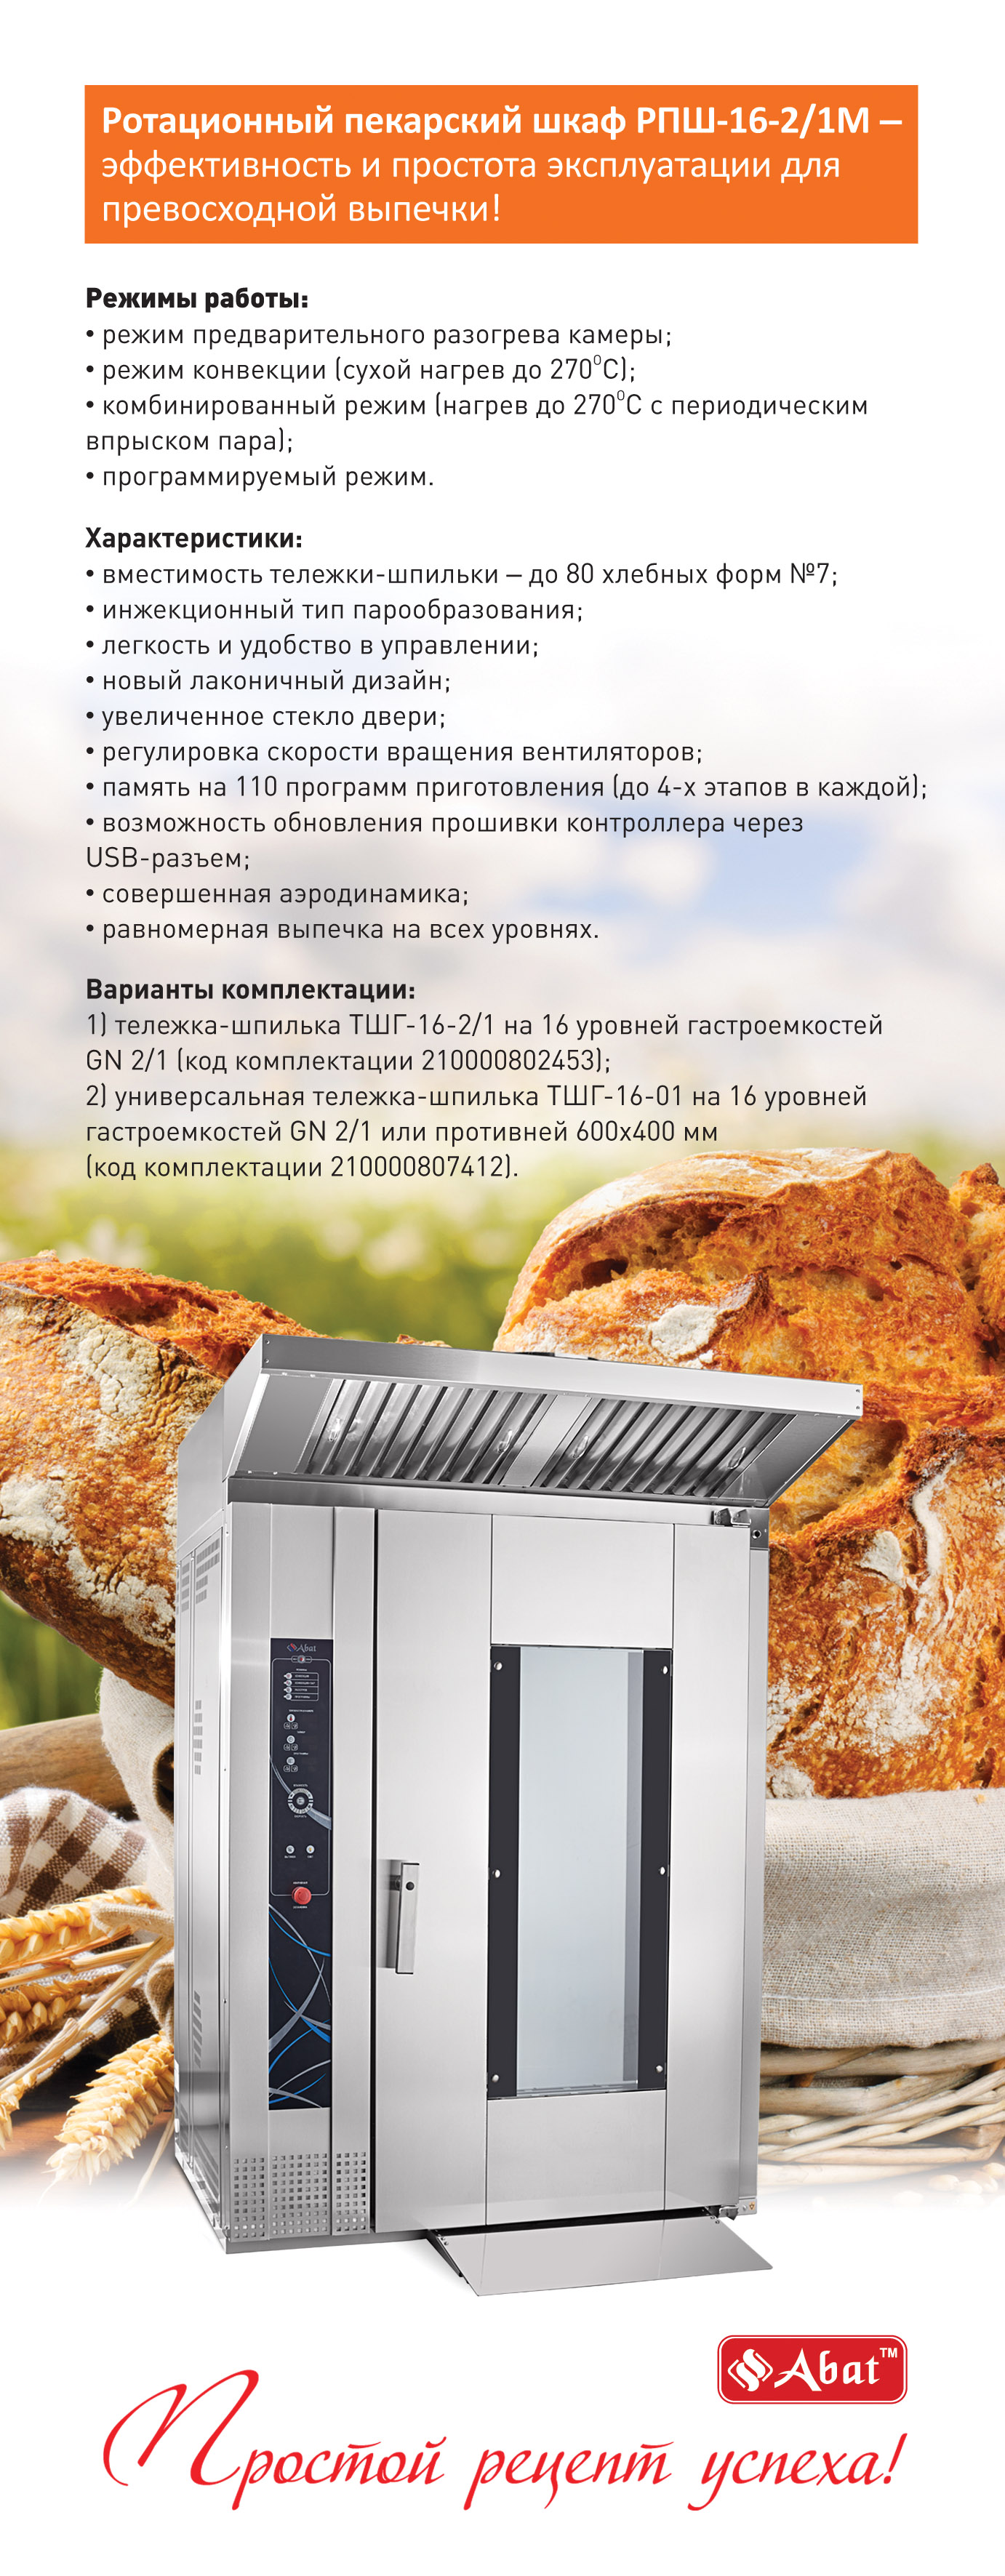 Шкаф ротационный пекарский РПШ-16-2/1м+ТШГ-16-2/1 210000802453